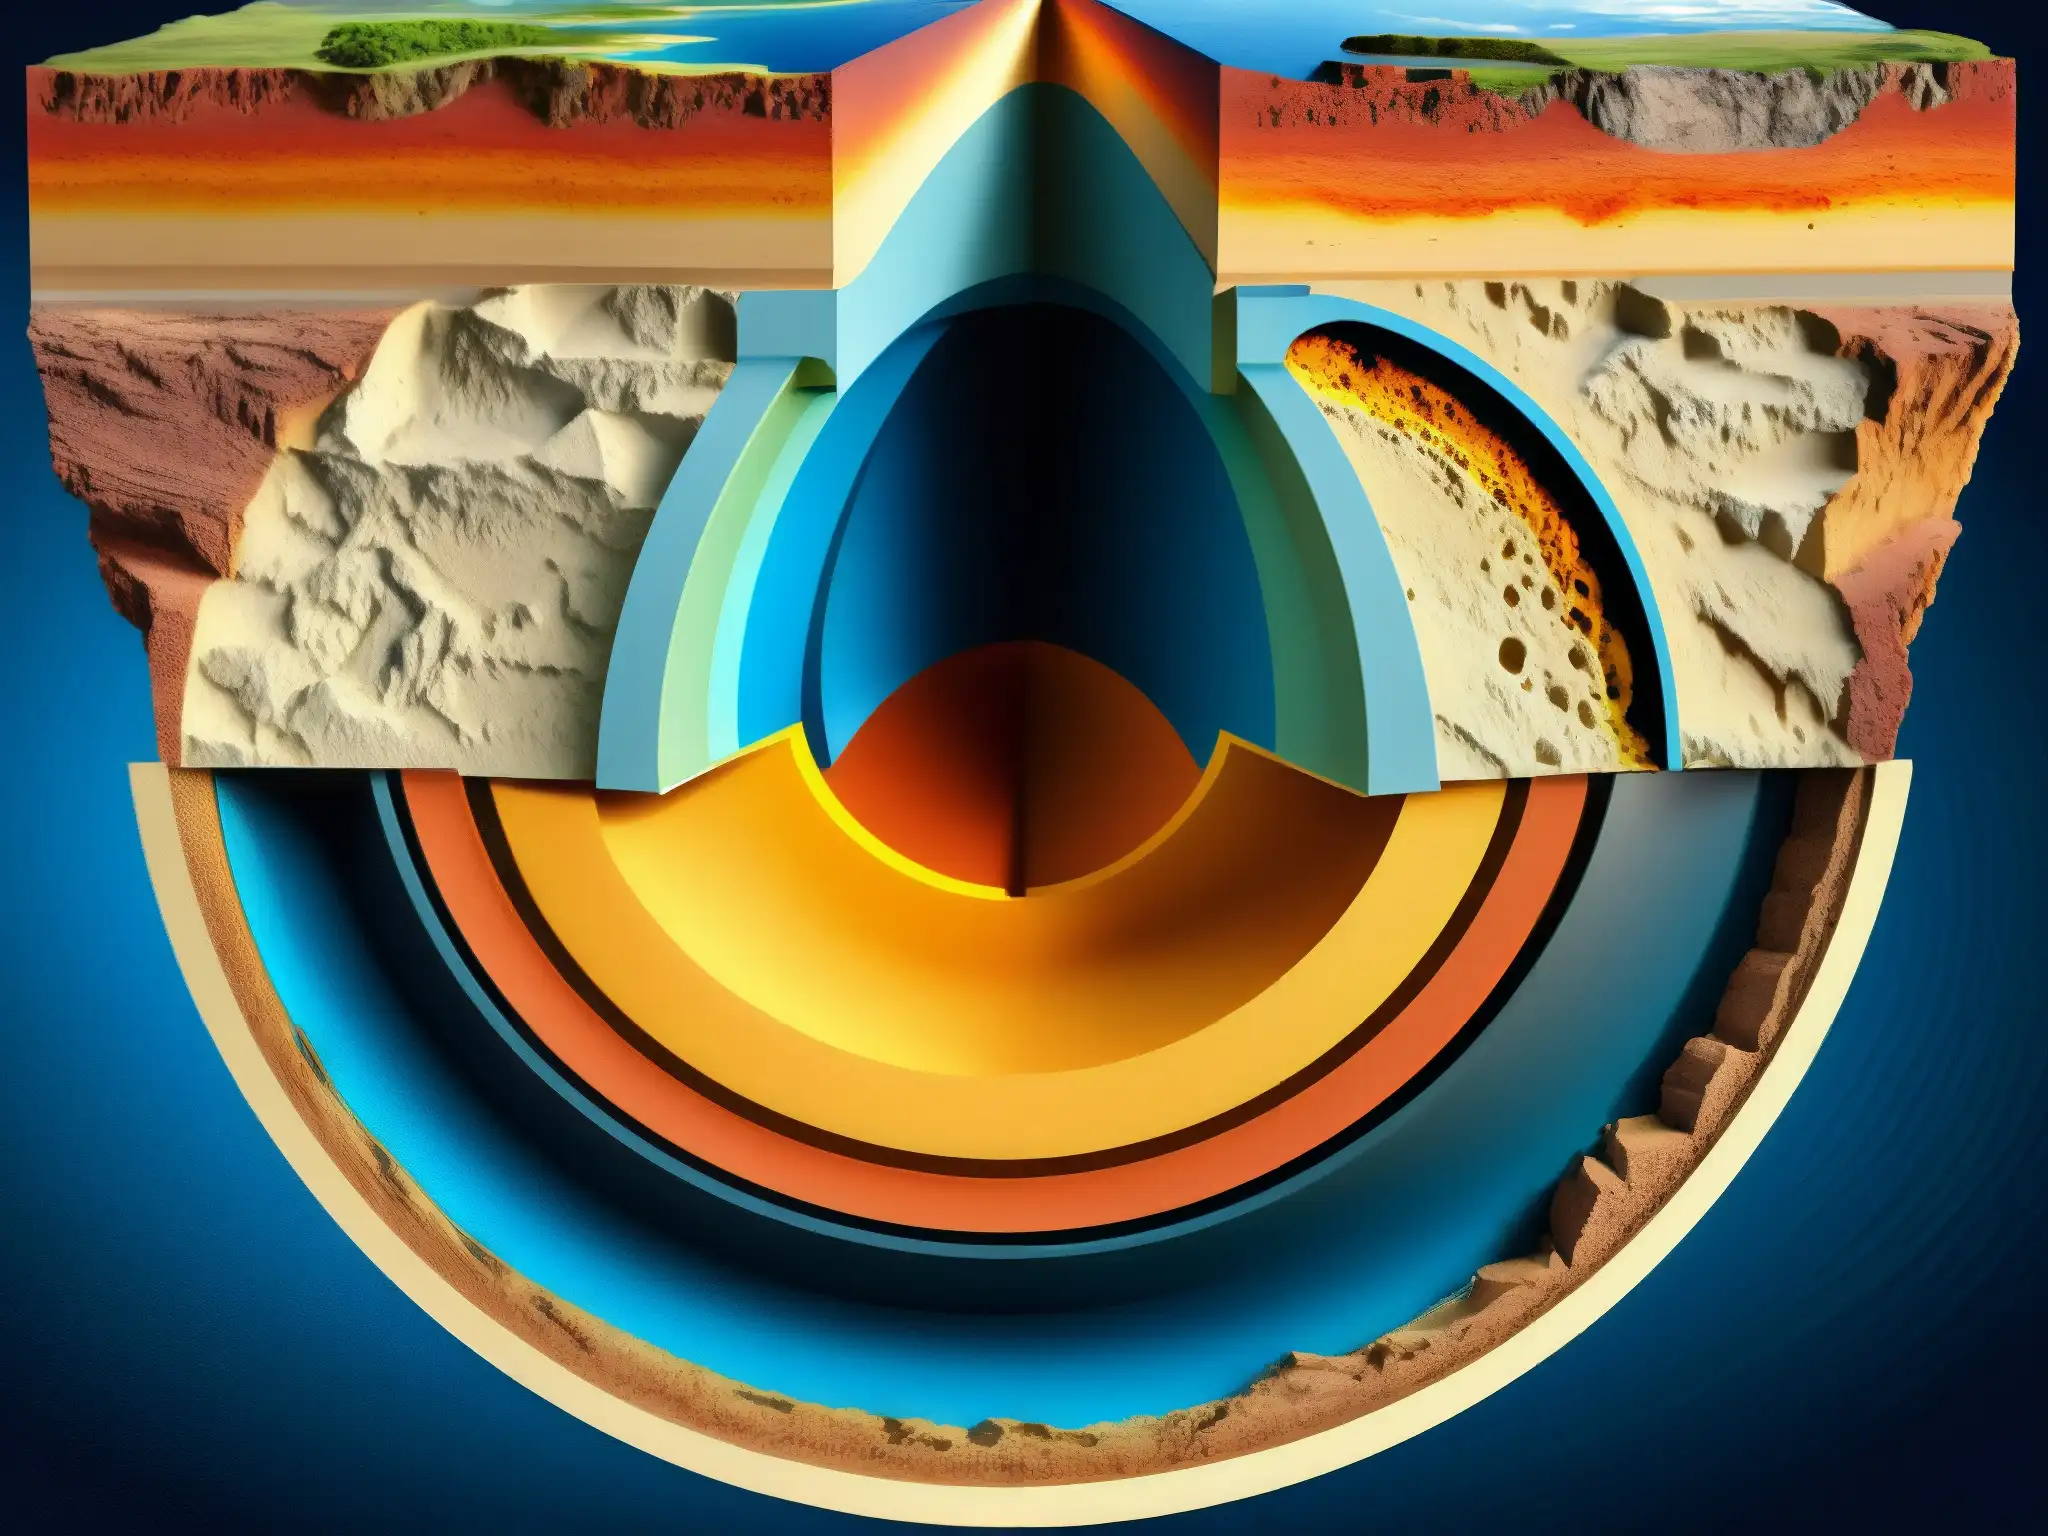 Una representación detallada y realista de la sección transversal de la Tierra, mostrando la posibilidad científica de la teoría de la tierra hueca